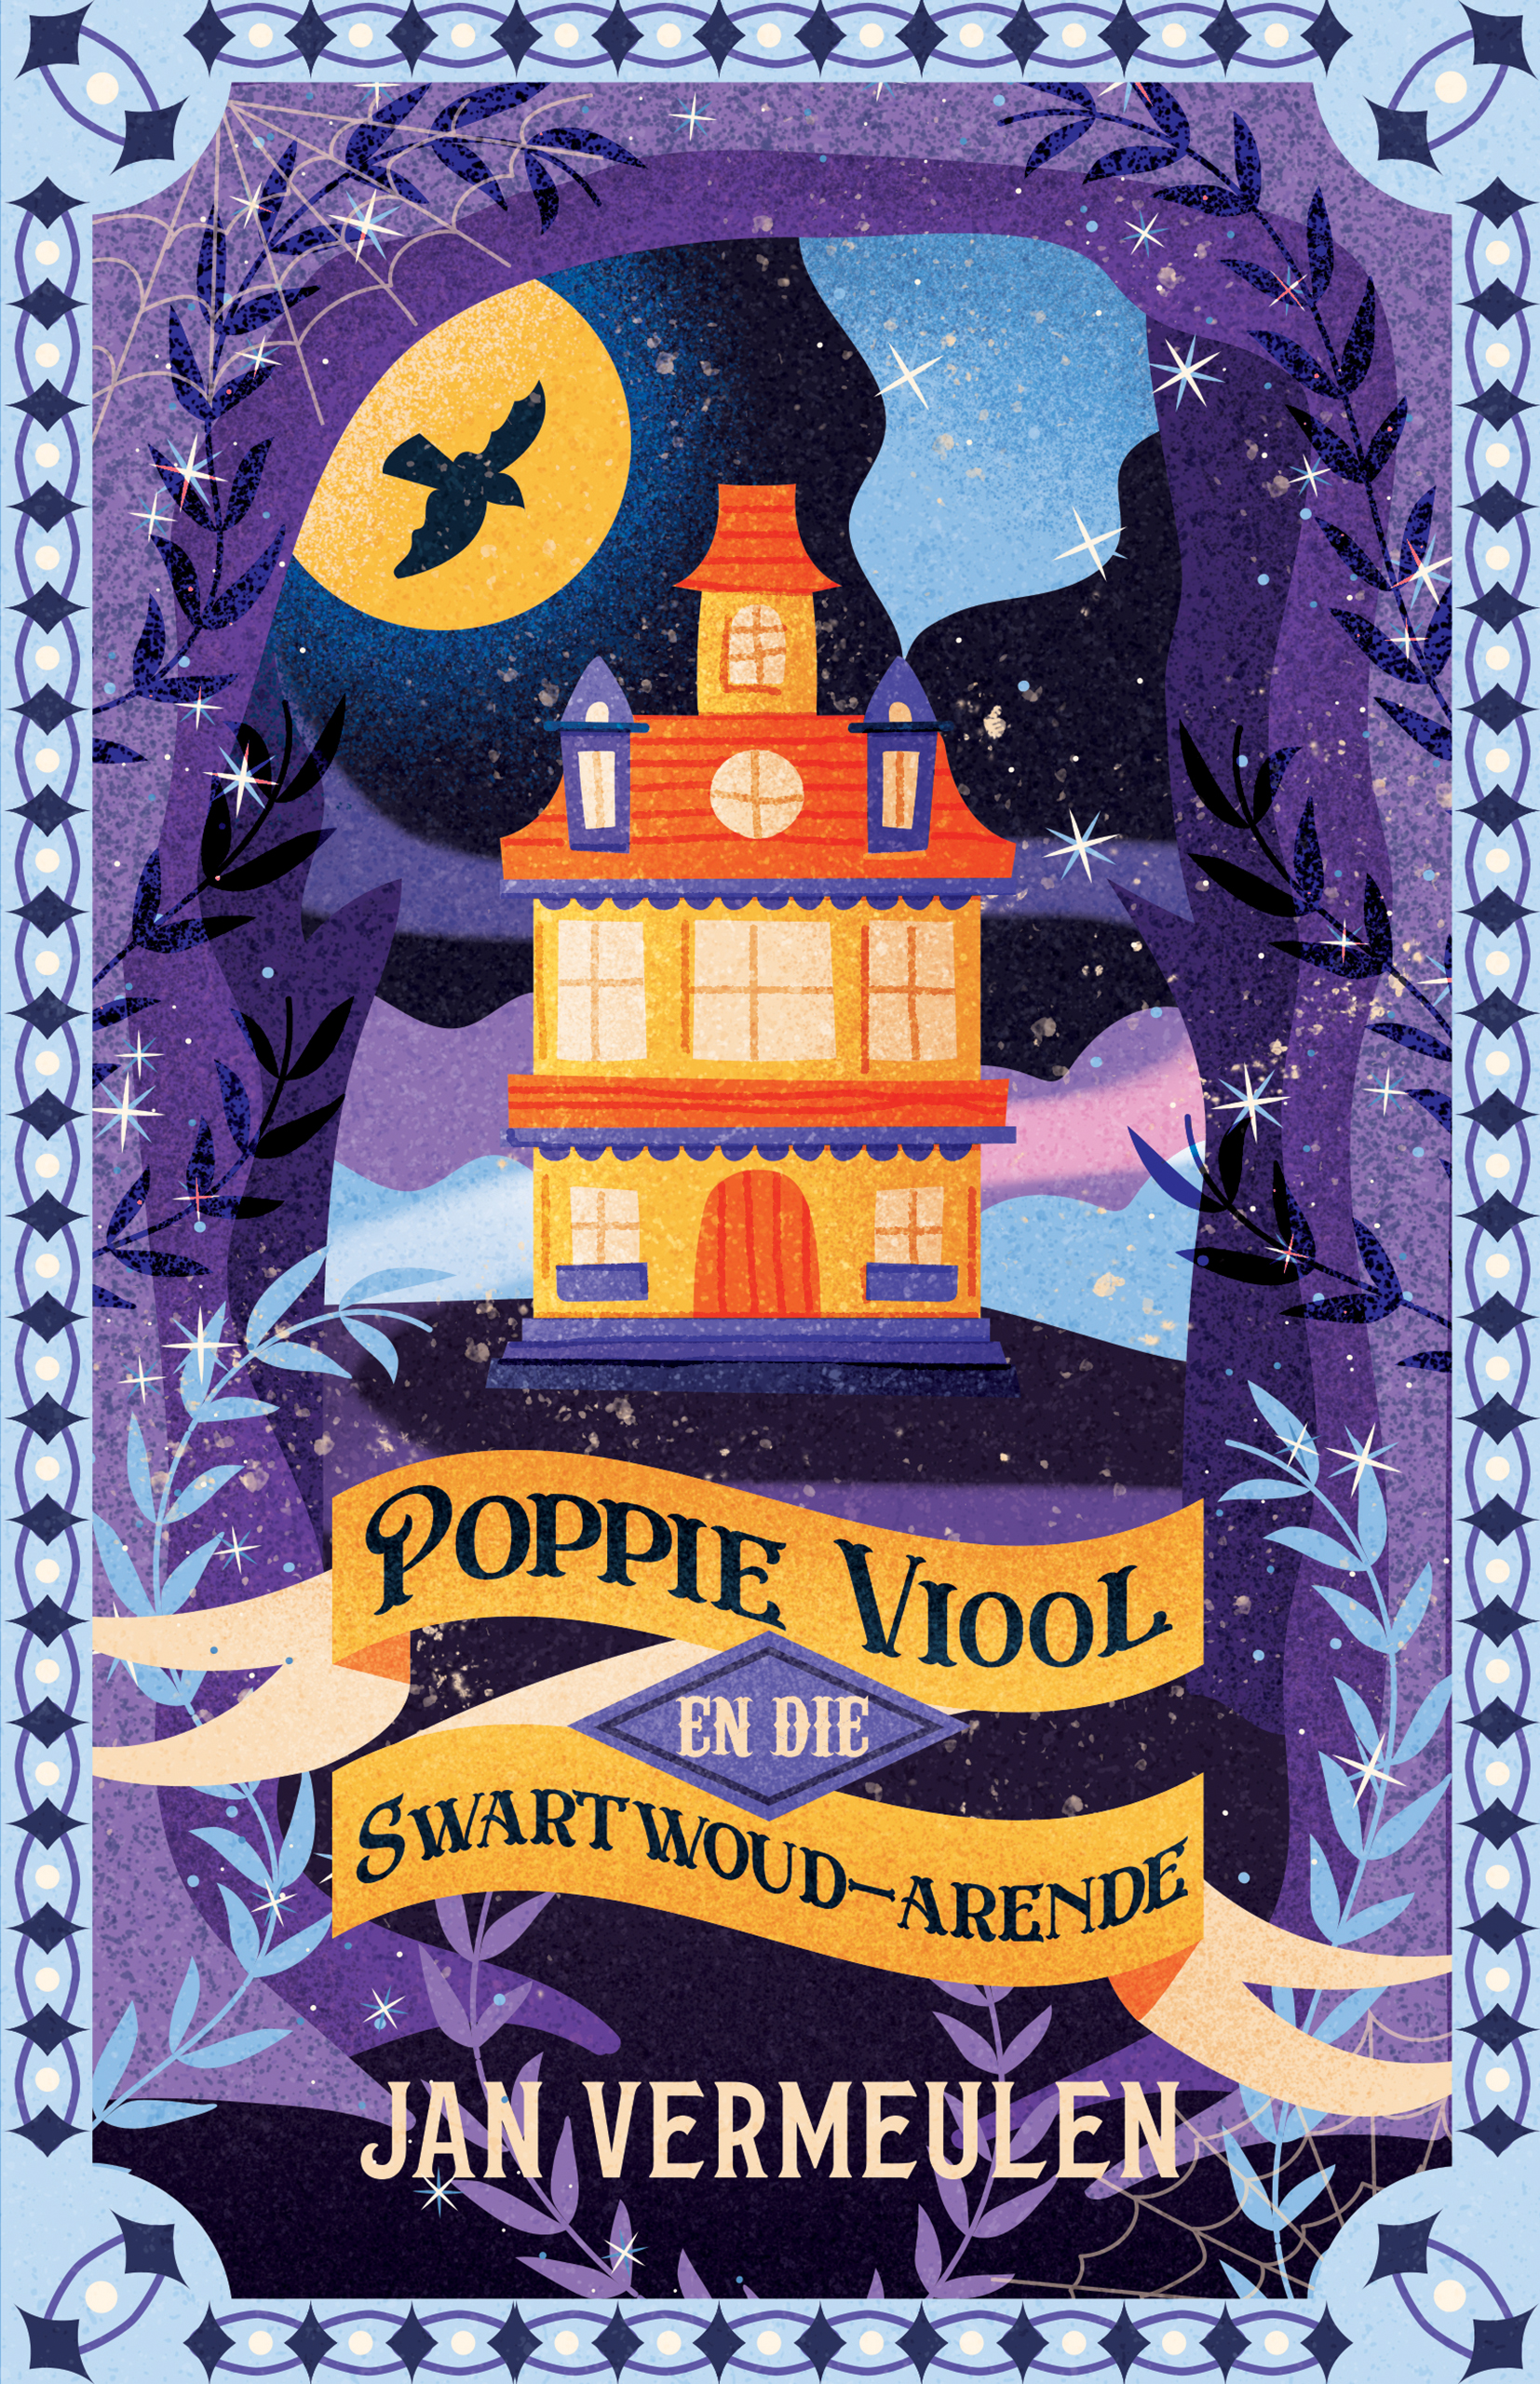 Poppie Viool en die Swartwoud-Arende